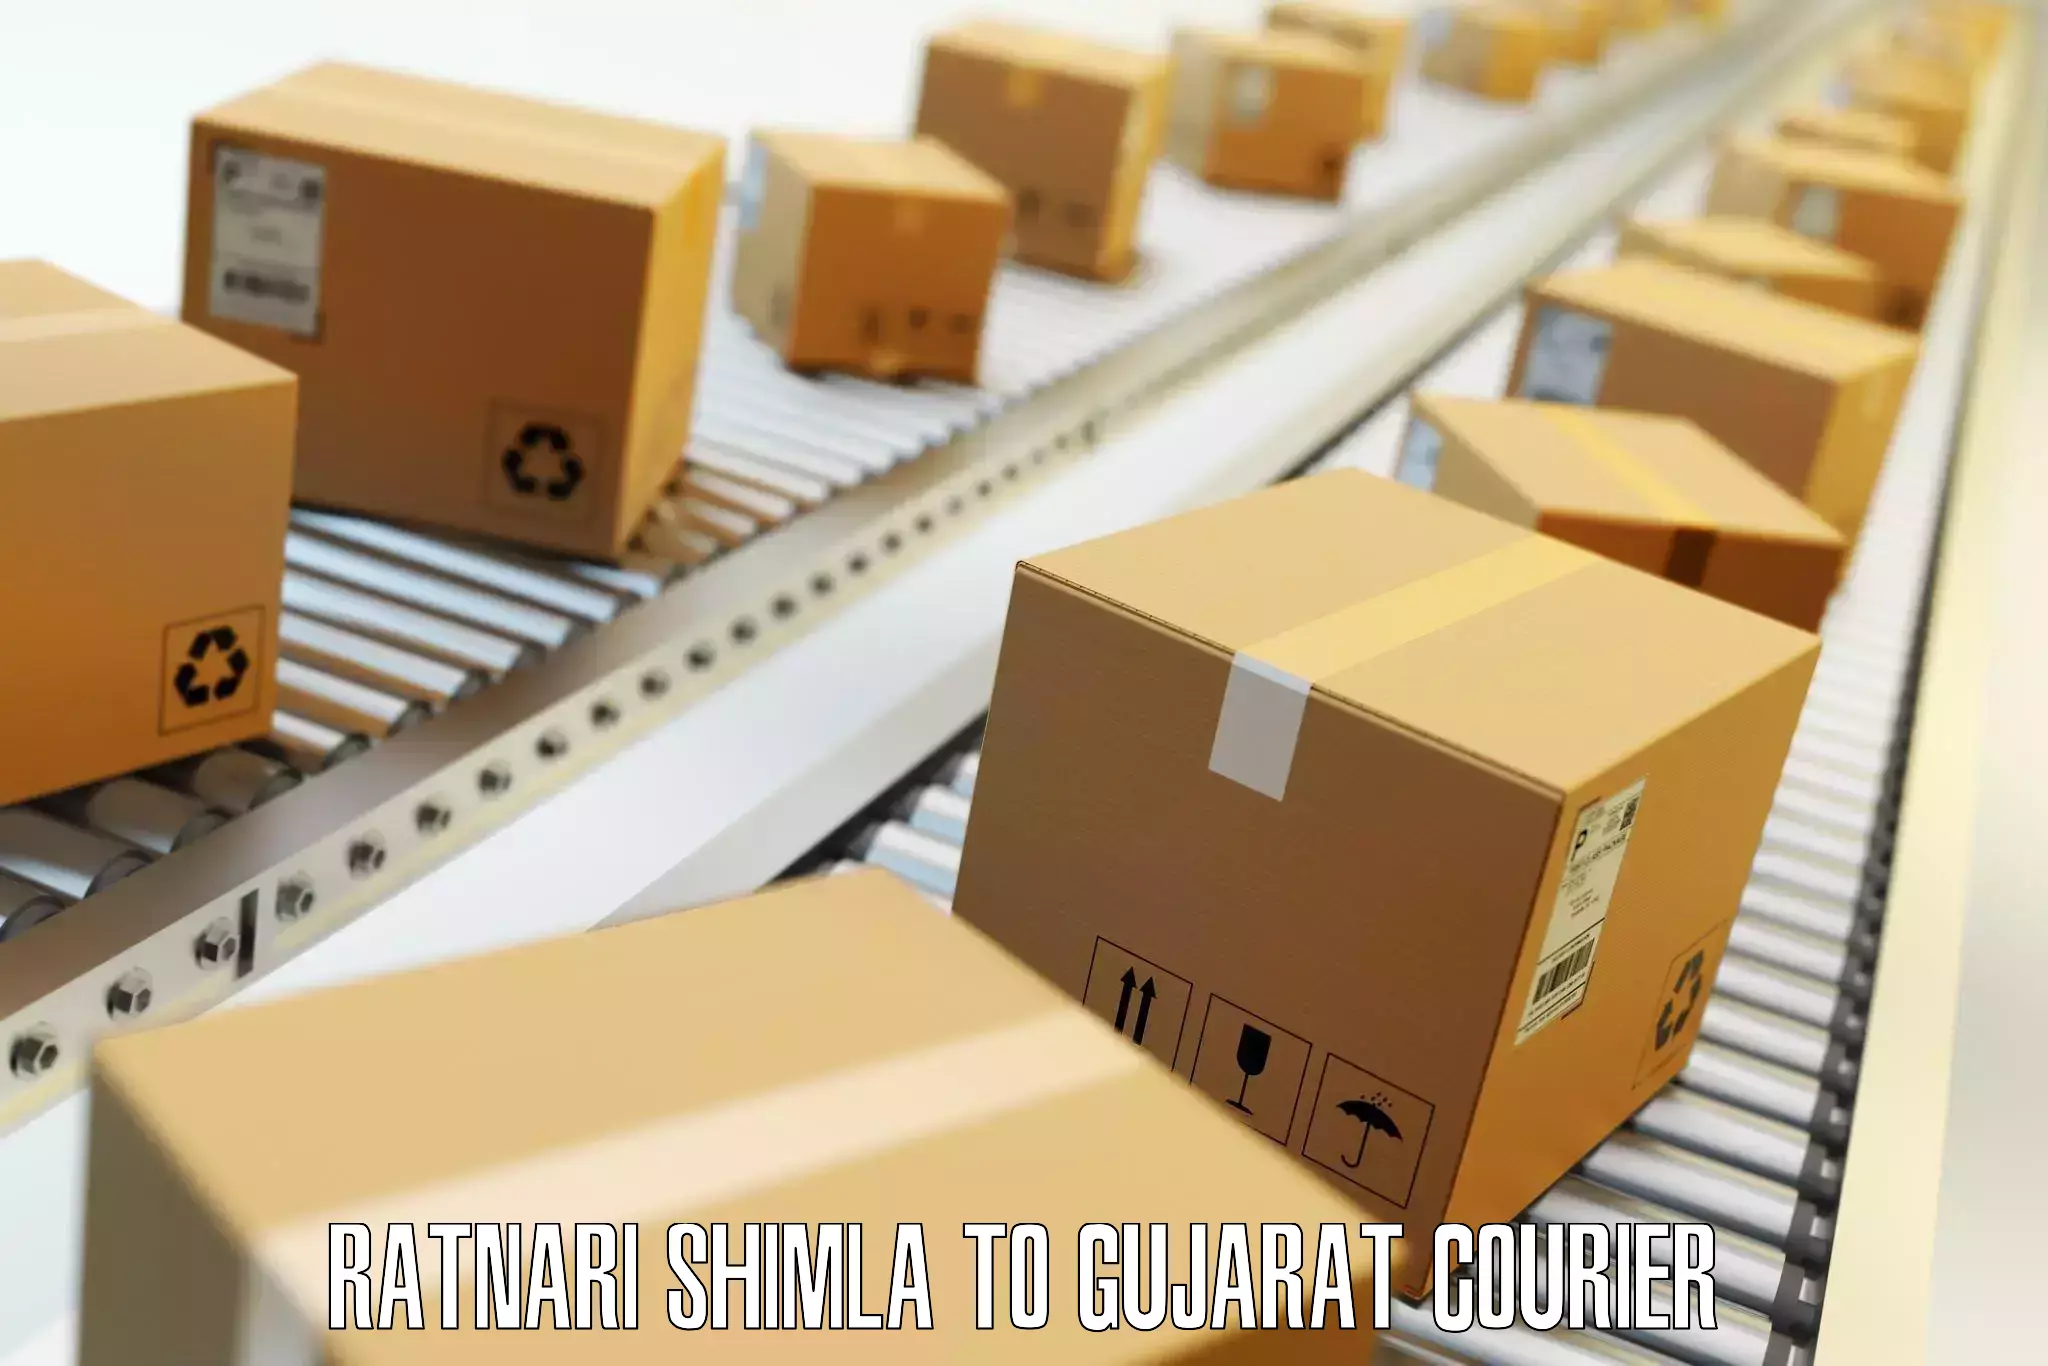 Baggage transport scheduler Ratnari Shimla to Gujarat